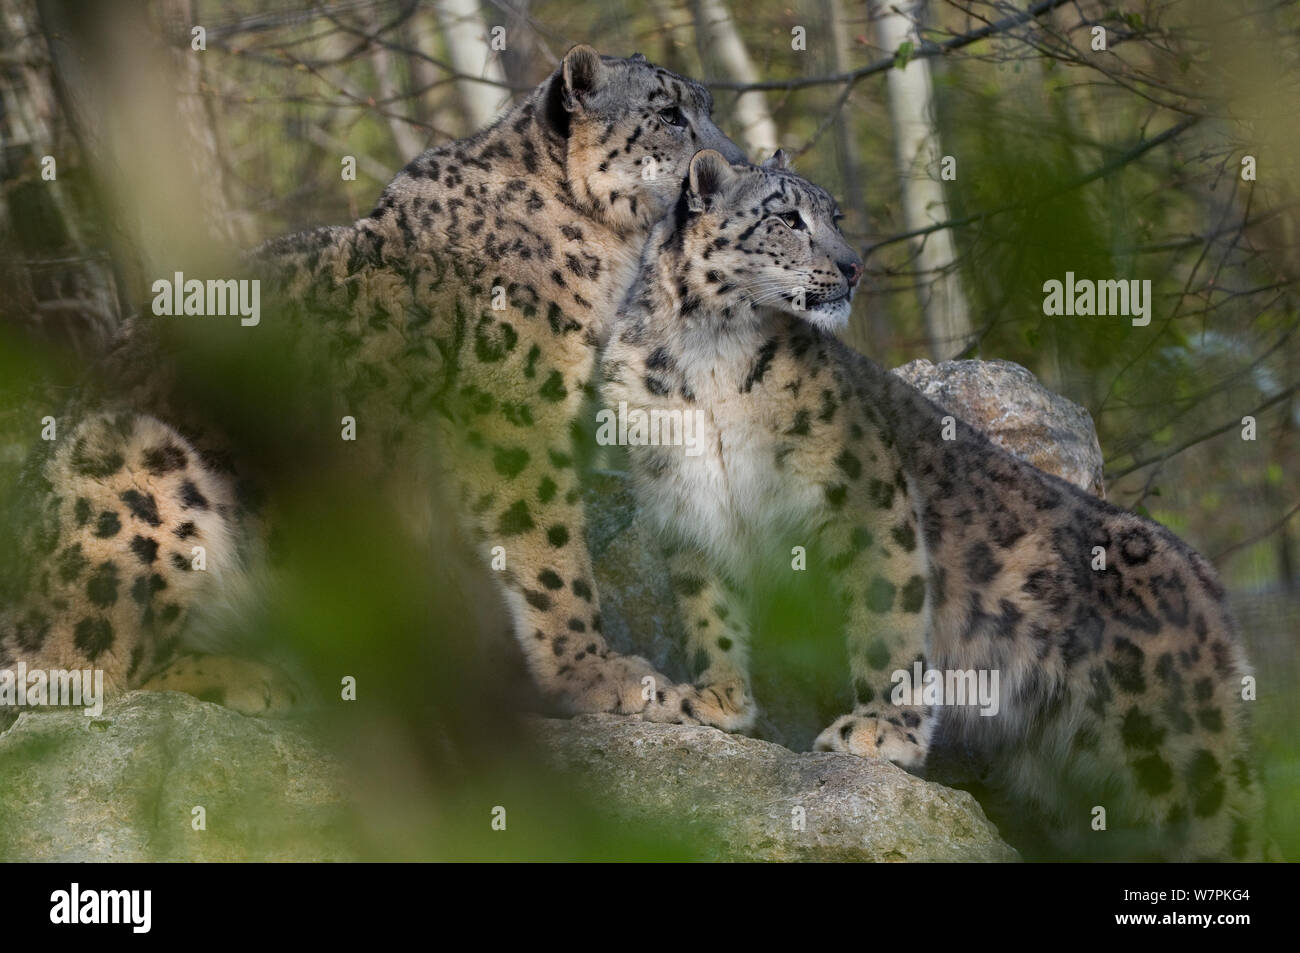 Snow Léopard (Panthera uncia) Mère et jeune, captive Banque D'Images